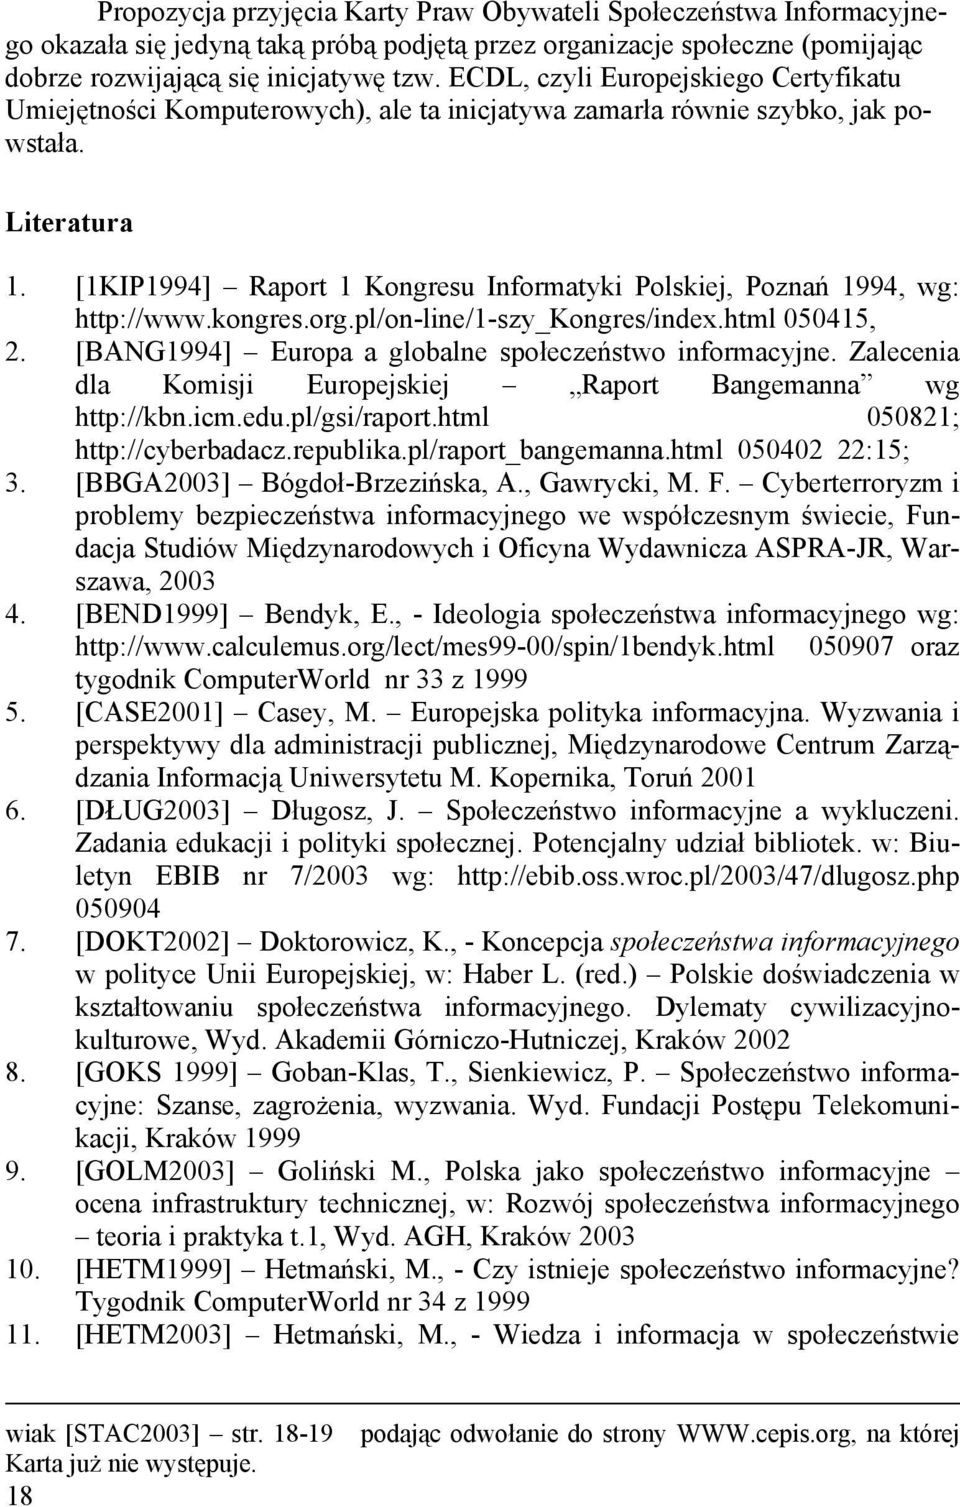 [1KIP1994] Raport 1 Kongresu Informatyki Polskiej, Poznań 1994, wg: http://www.kongres.org.pl/on-line/1-szy_kongres/index.html 050415, 2. [BANG1994] Europa a globalne społeczeństwo informacyjne.